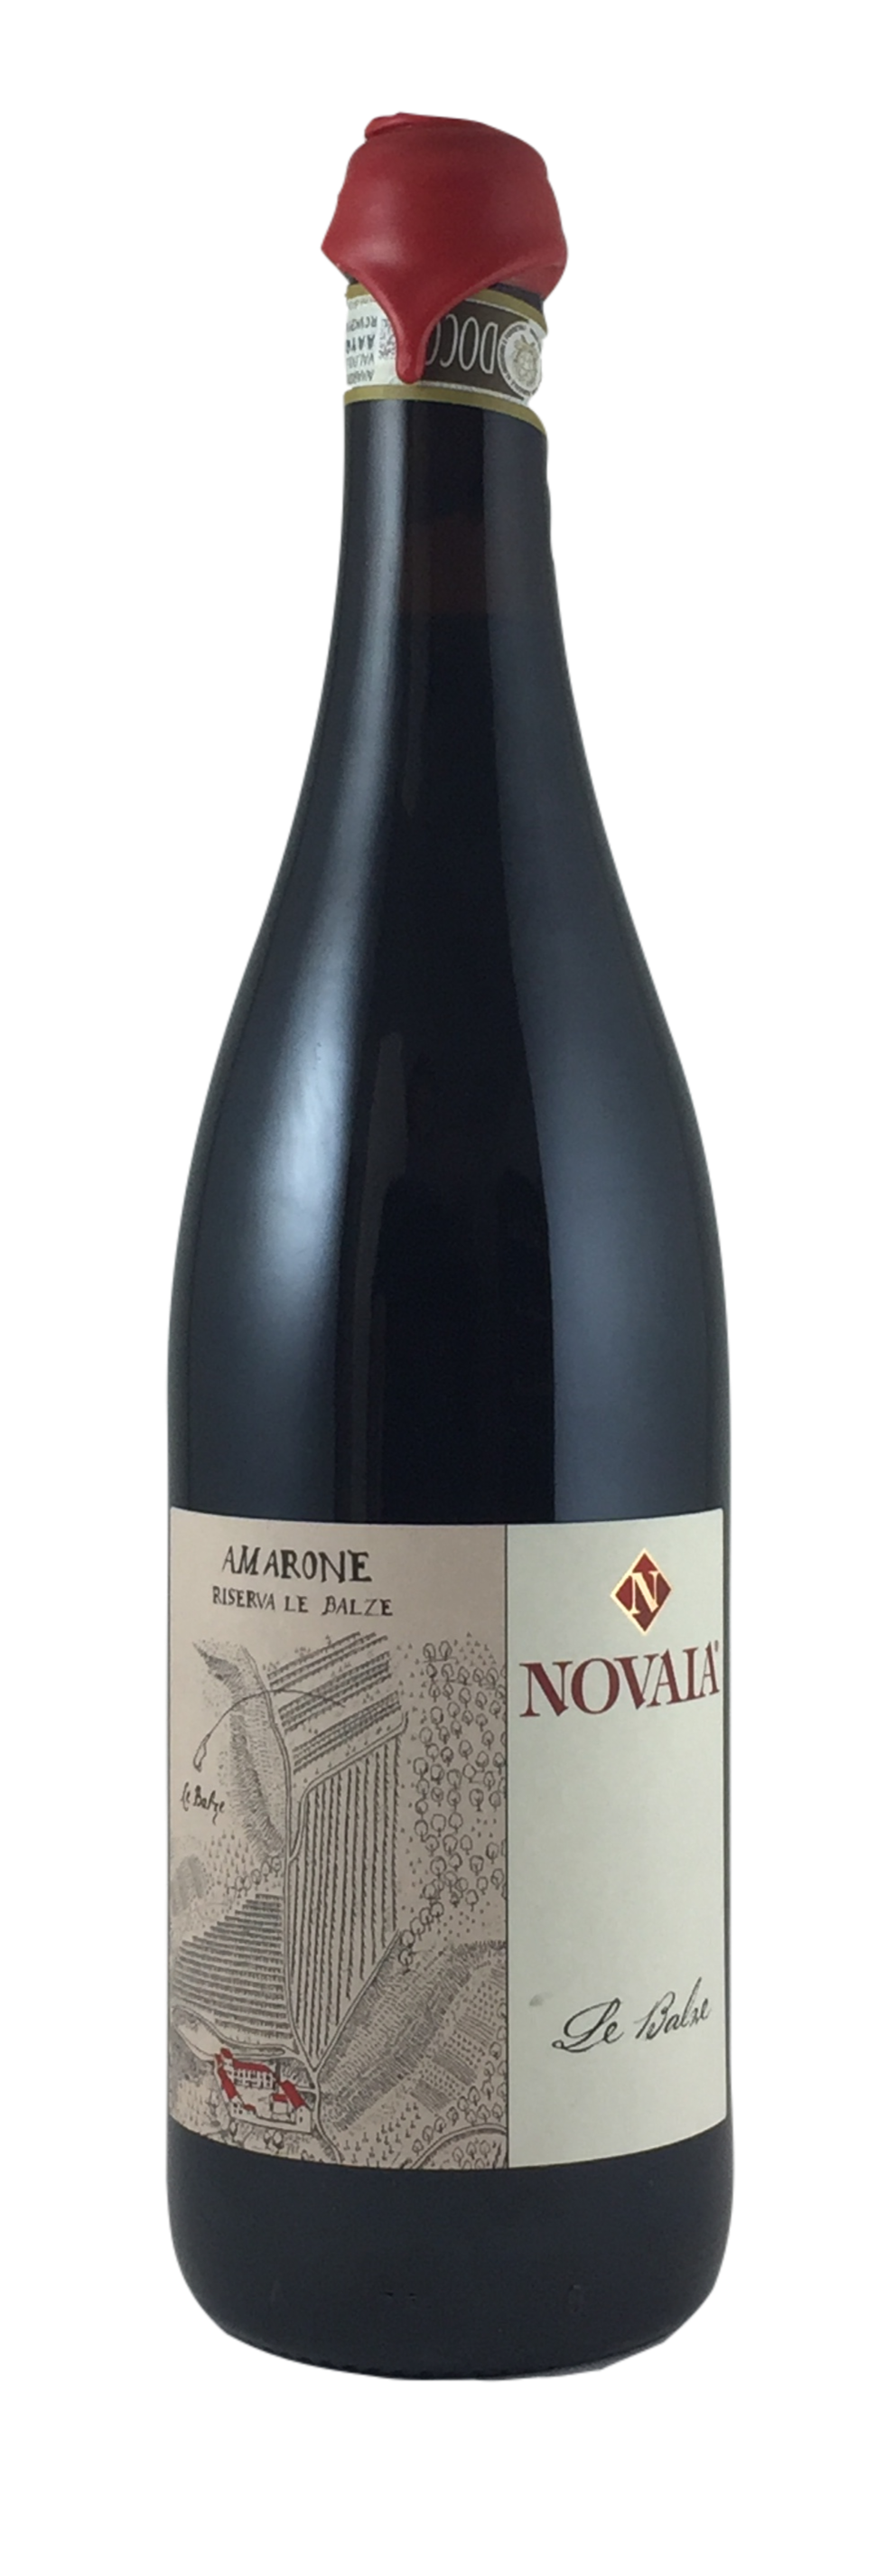 Novaia - Amarone della Valpolicella  Ris. "Le Balze" 2013